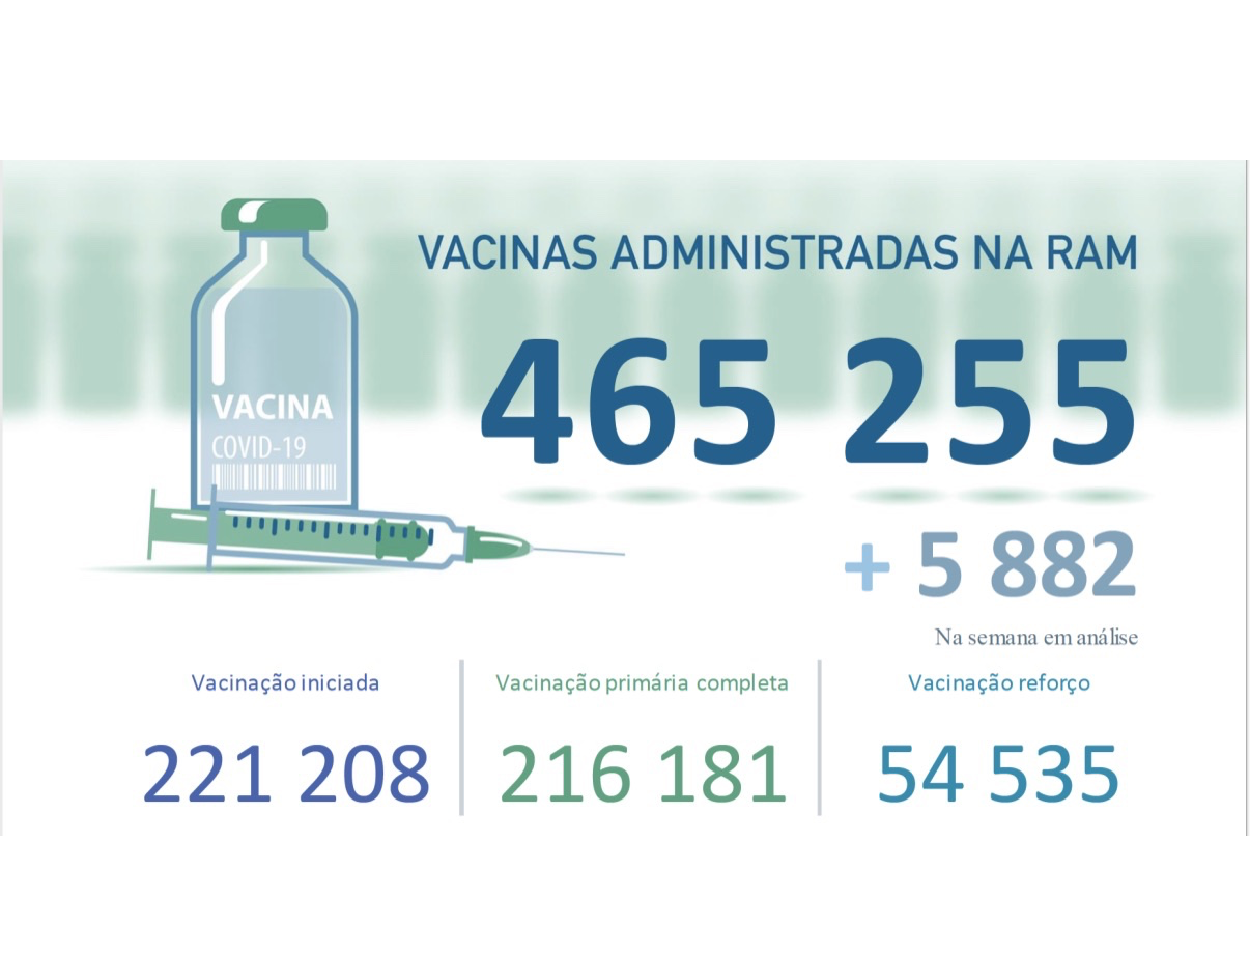 Administradas mais de  465 255 vacinas contra a COVID-19 na RAM